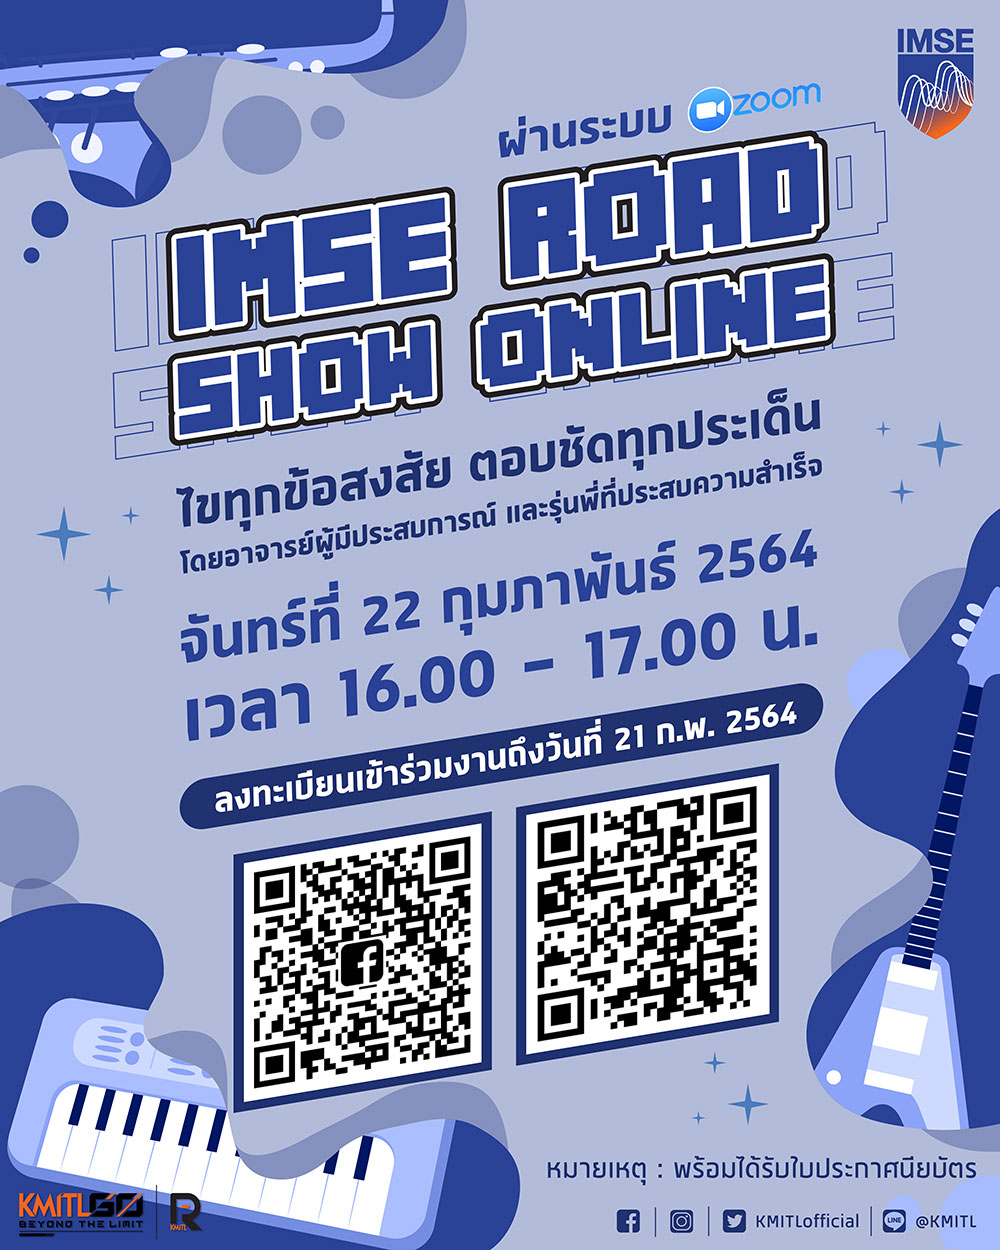 ฟัง IMSE Road Show online